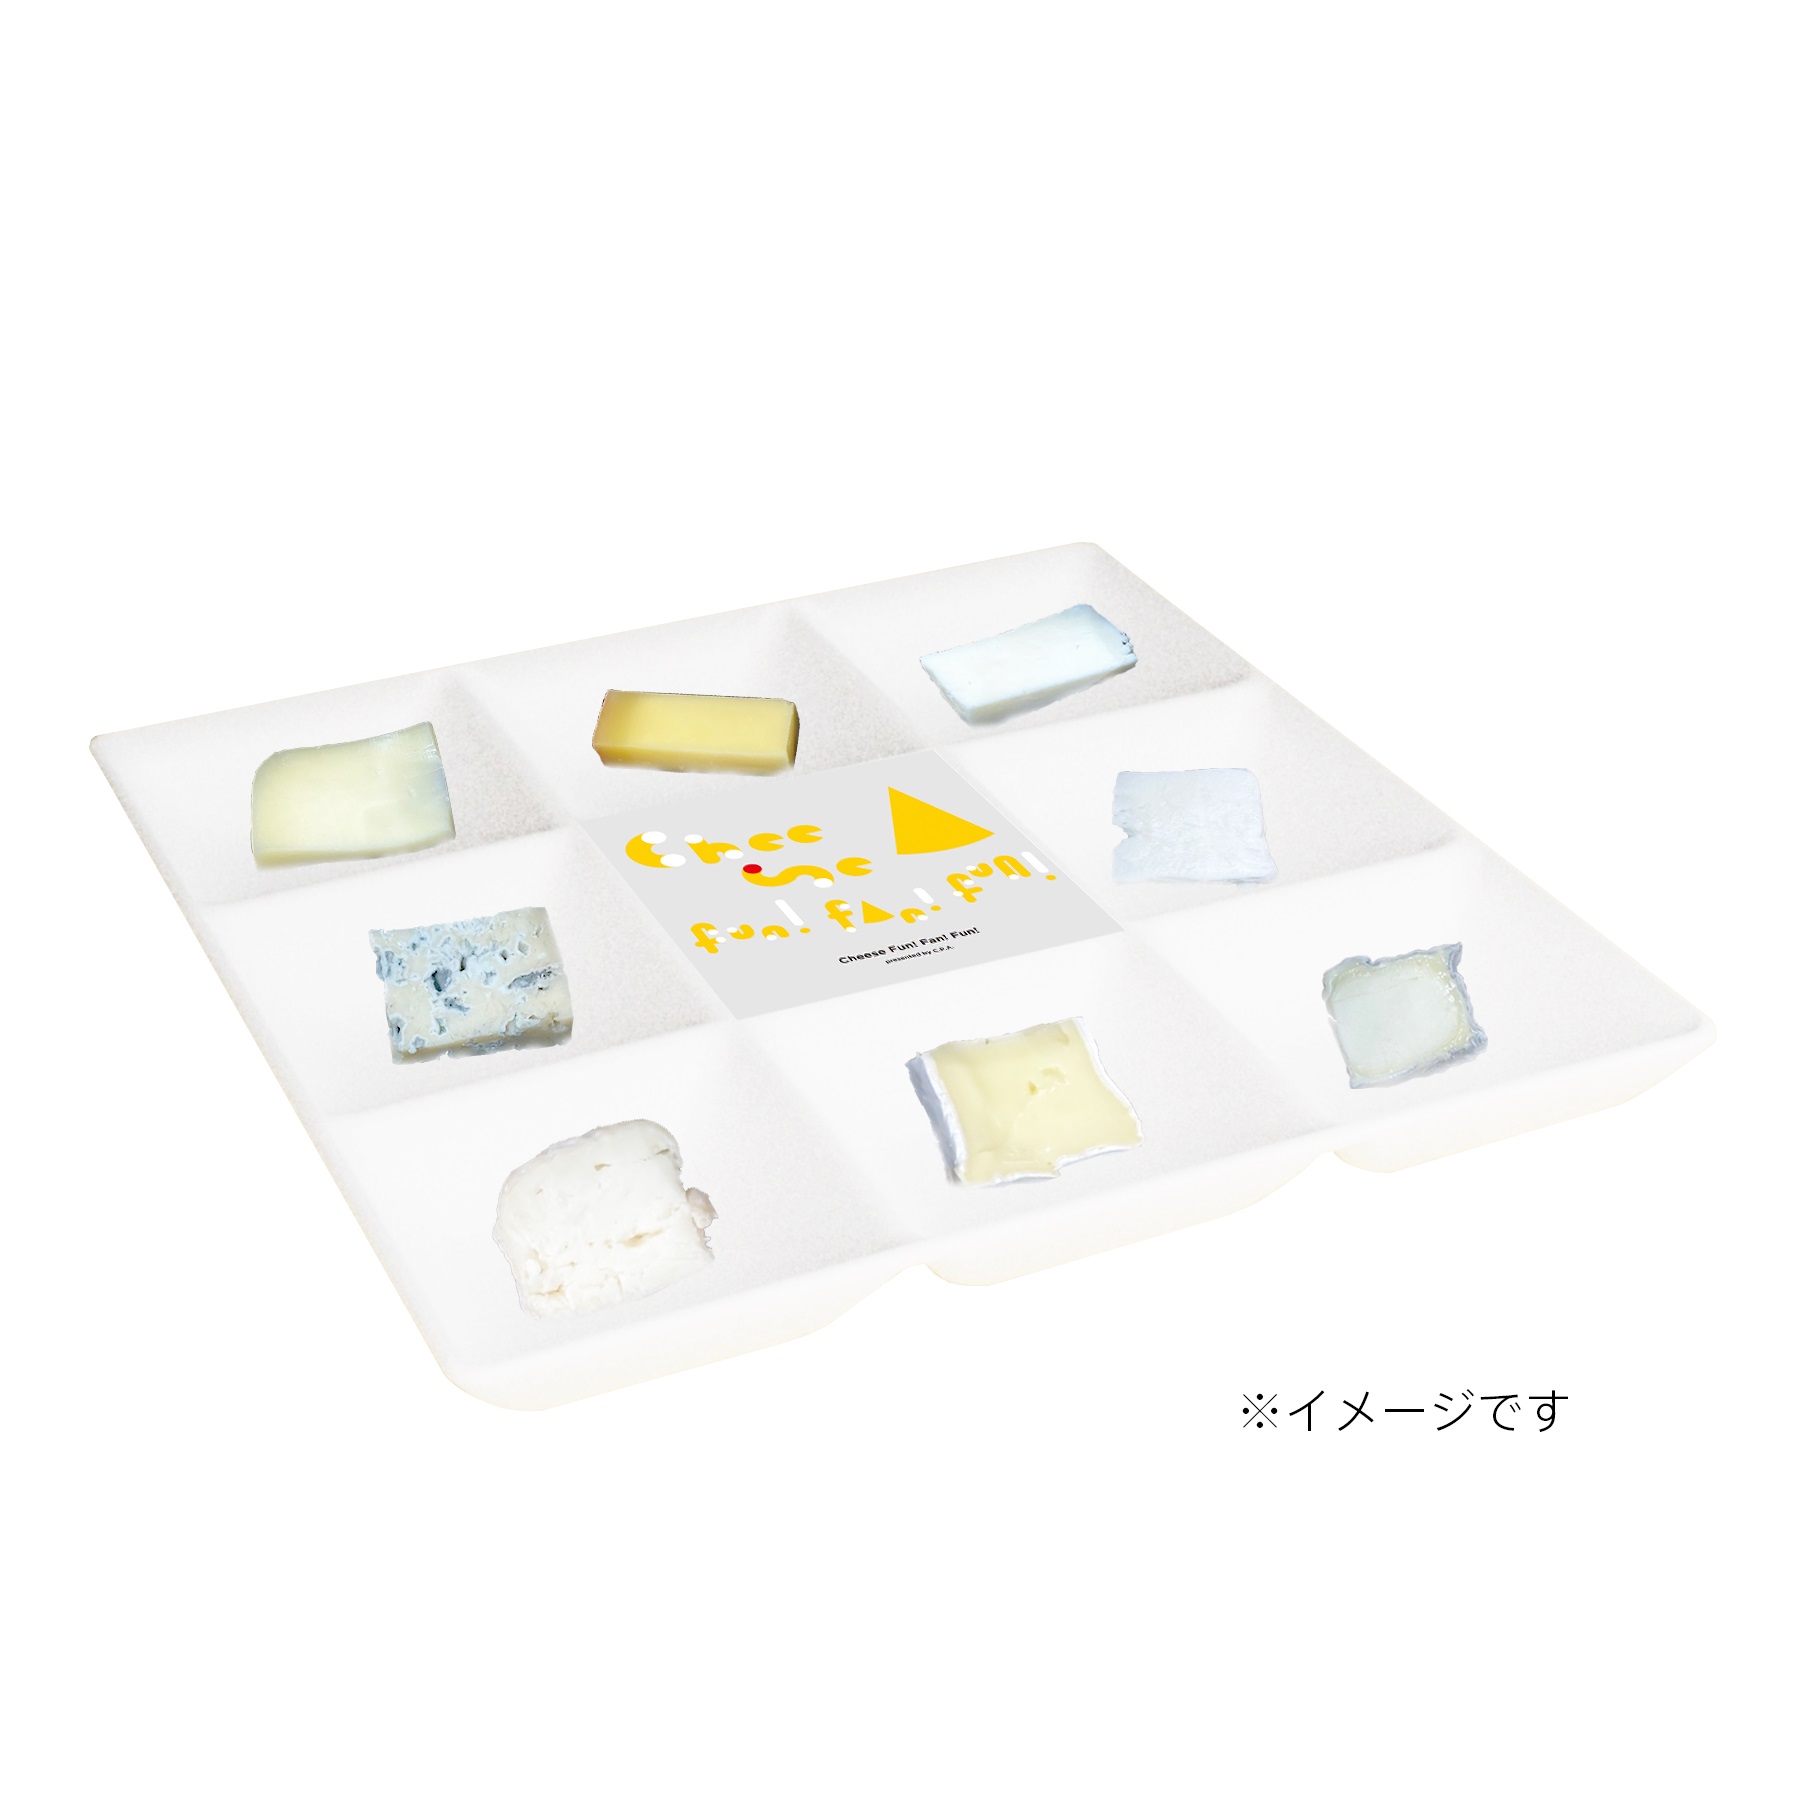 「運命のチーズ探し体験チケット」で食べられるチーズアソートイメージ